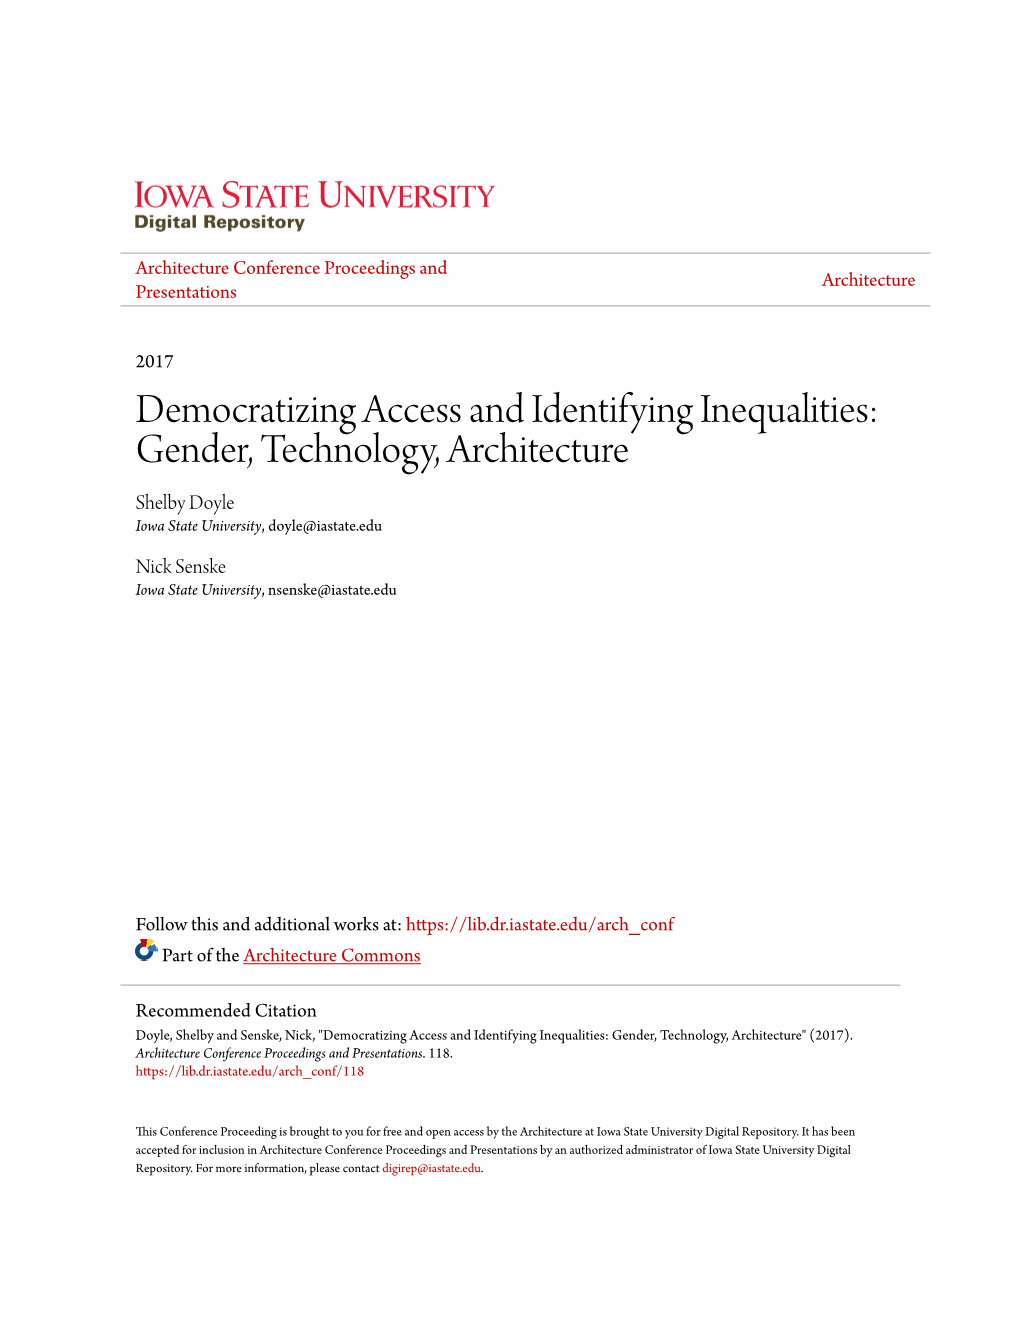 Gender, Technology, Architecture Shelby Doyle Iowa State University, Doyle@Iastate.Edu